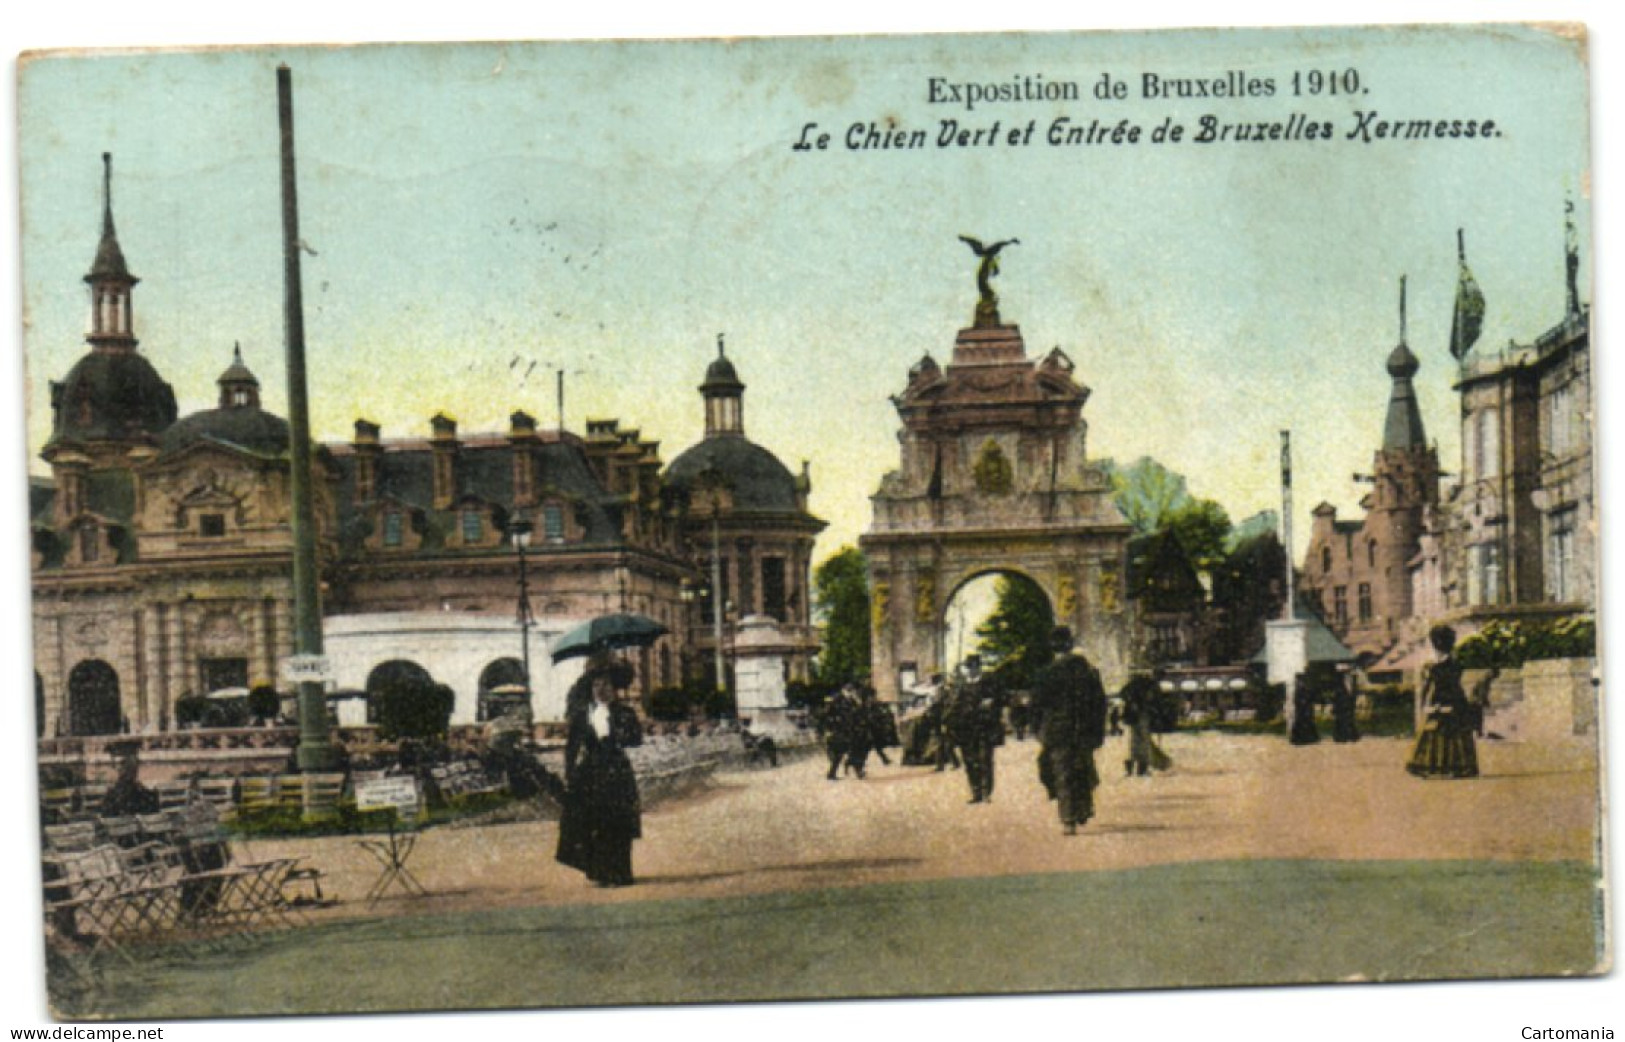 Exposition De Bruxelles 1910 - Le Chien Verts Et Entrée De Bruxelles-Kermesse - Expositions Universelles